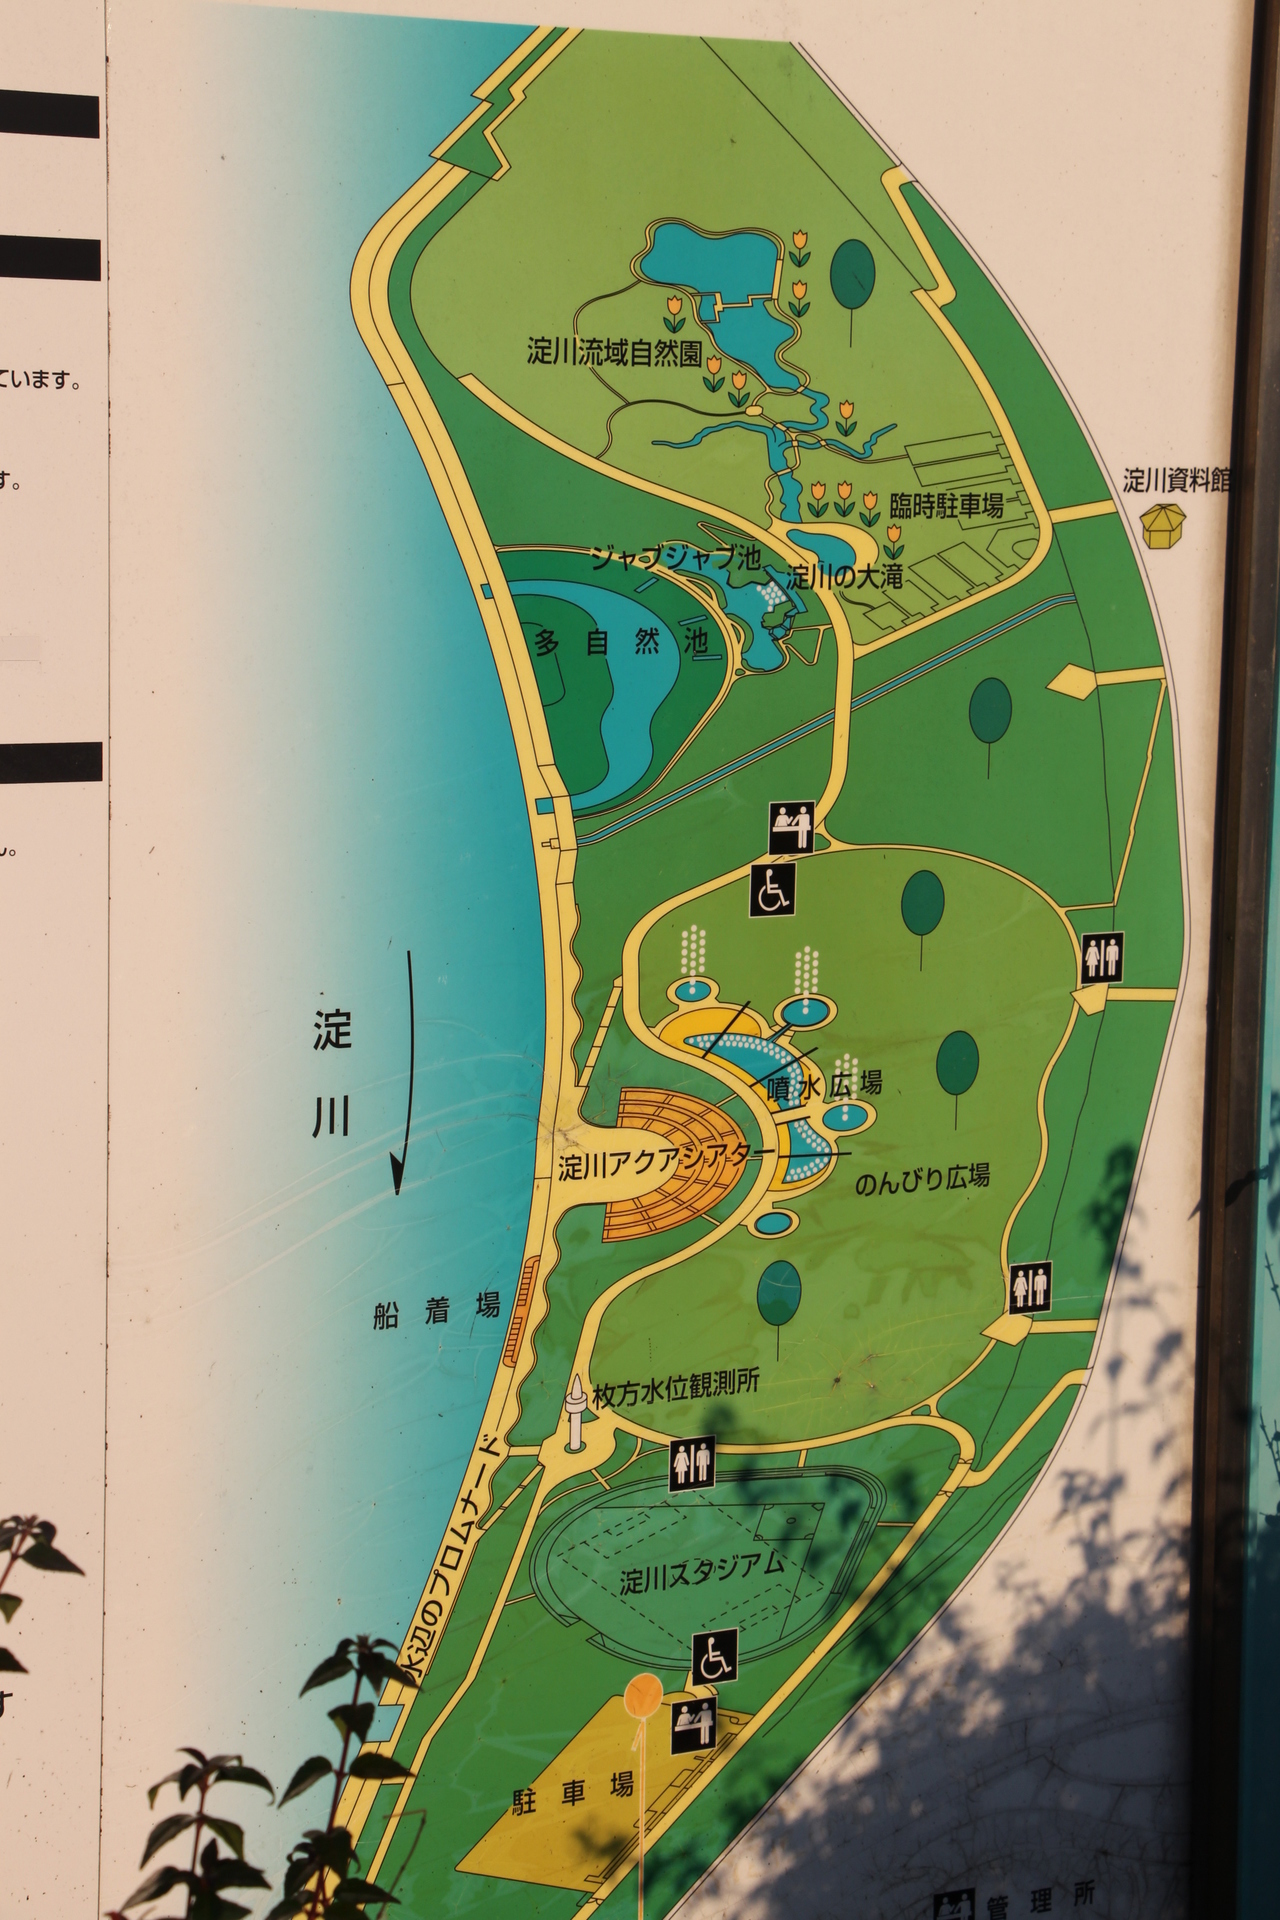 枚方地区の淀川河川公園でストライダーの練習 北摂てくてく